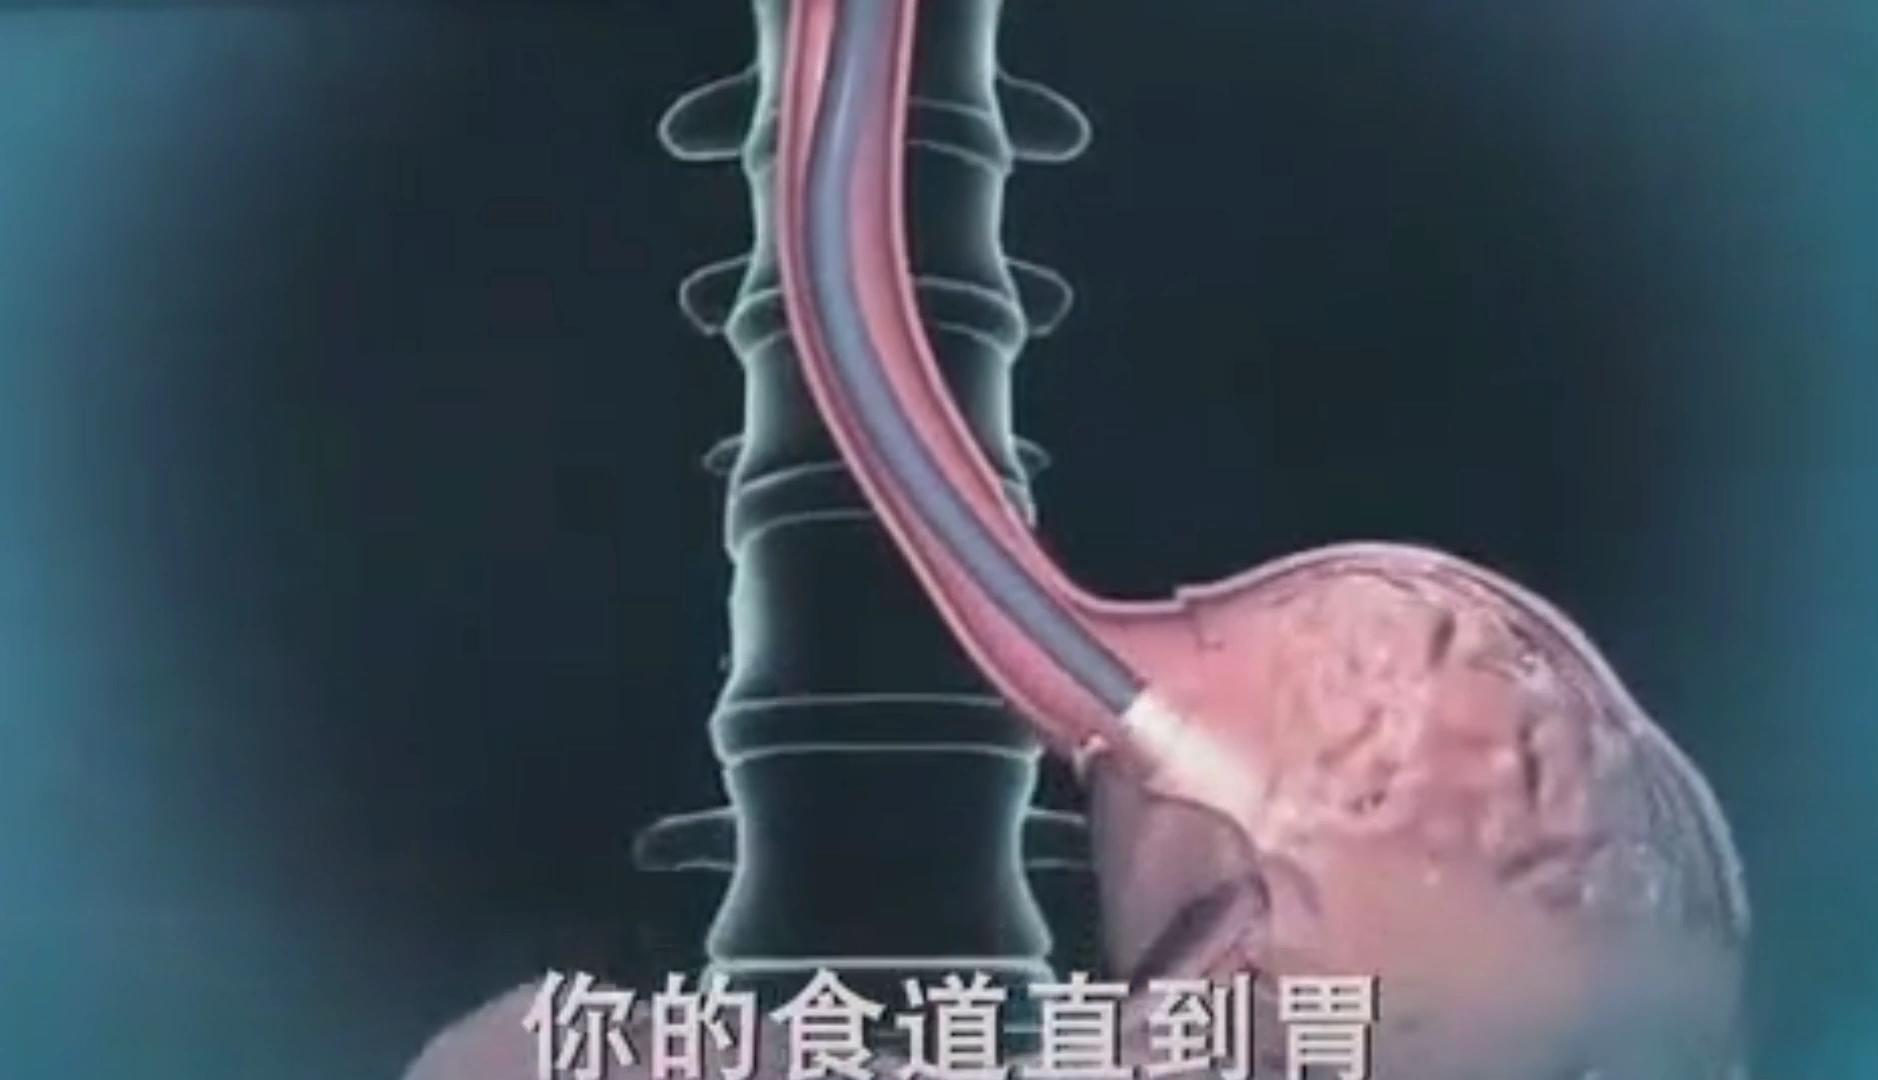 阜阳市妇女儿童医院这位硬核医生为自己做胃镜|中安在线阜阳频道